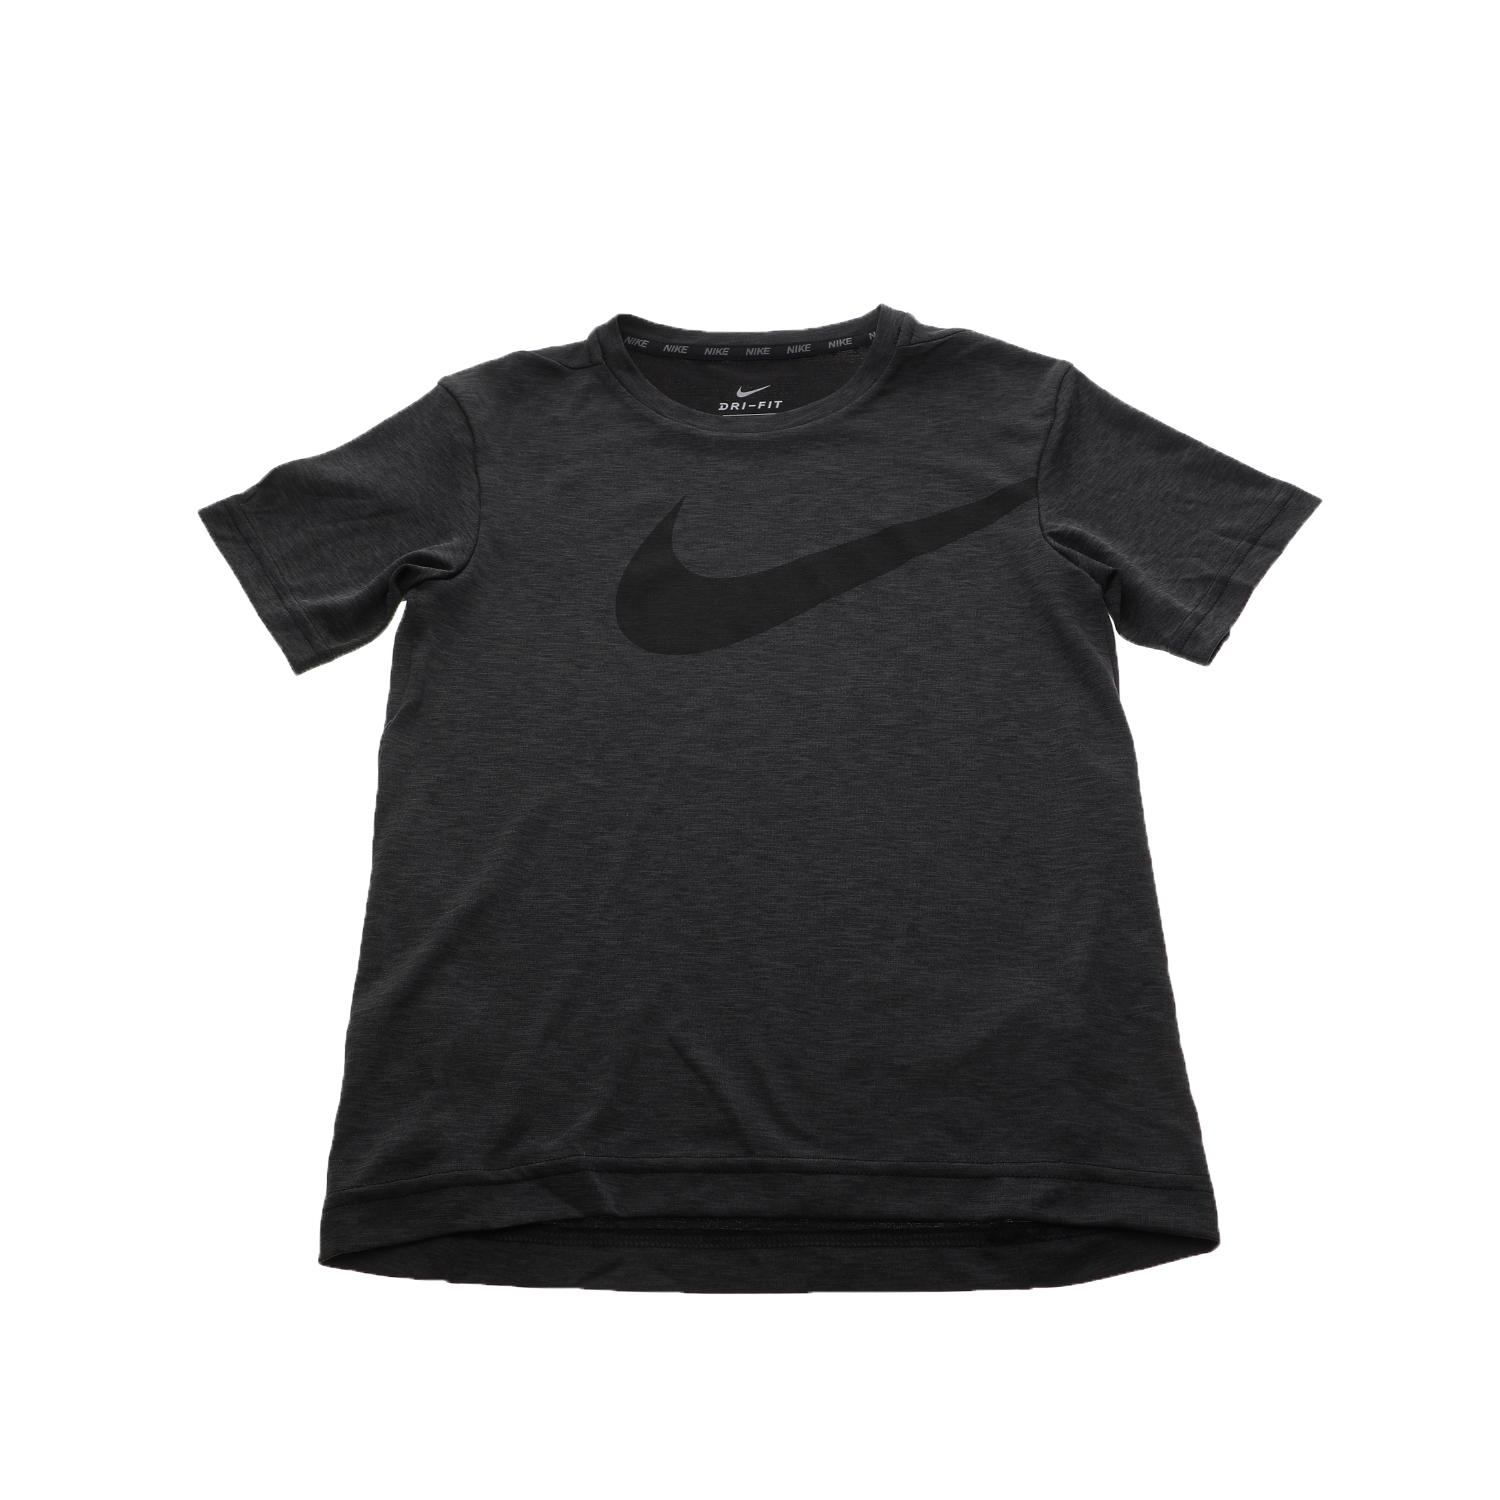 Παιδικά/Boys/Ρούχα/Αθλητικά NIKE - Αγορίστικη κοντομάνικη μπλούζα Nike BRTHE TOP SS HYPER GFX μαύρη